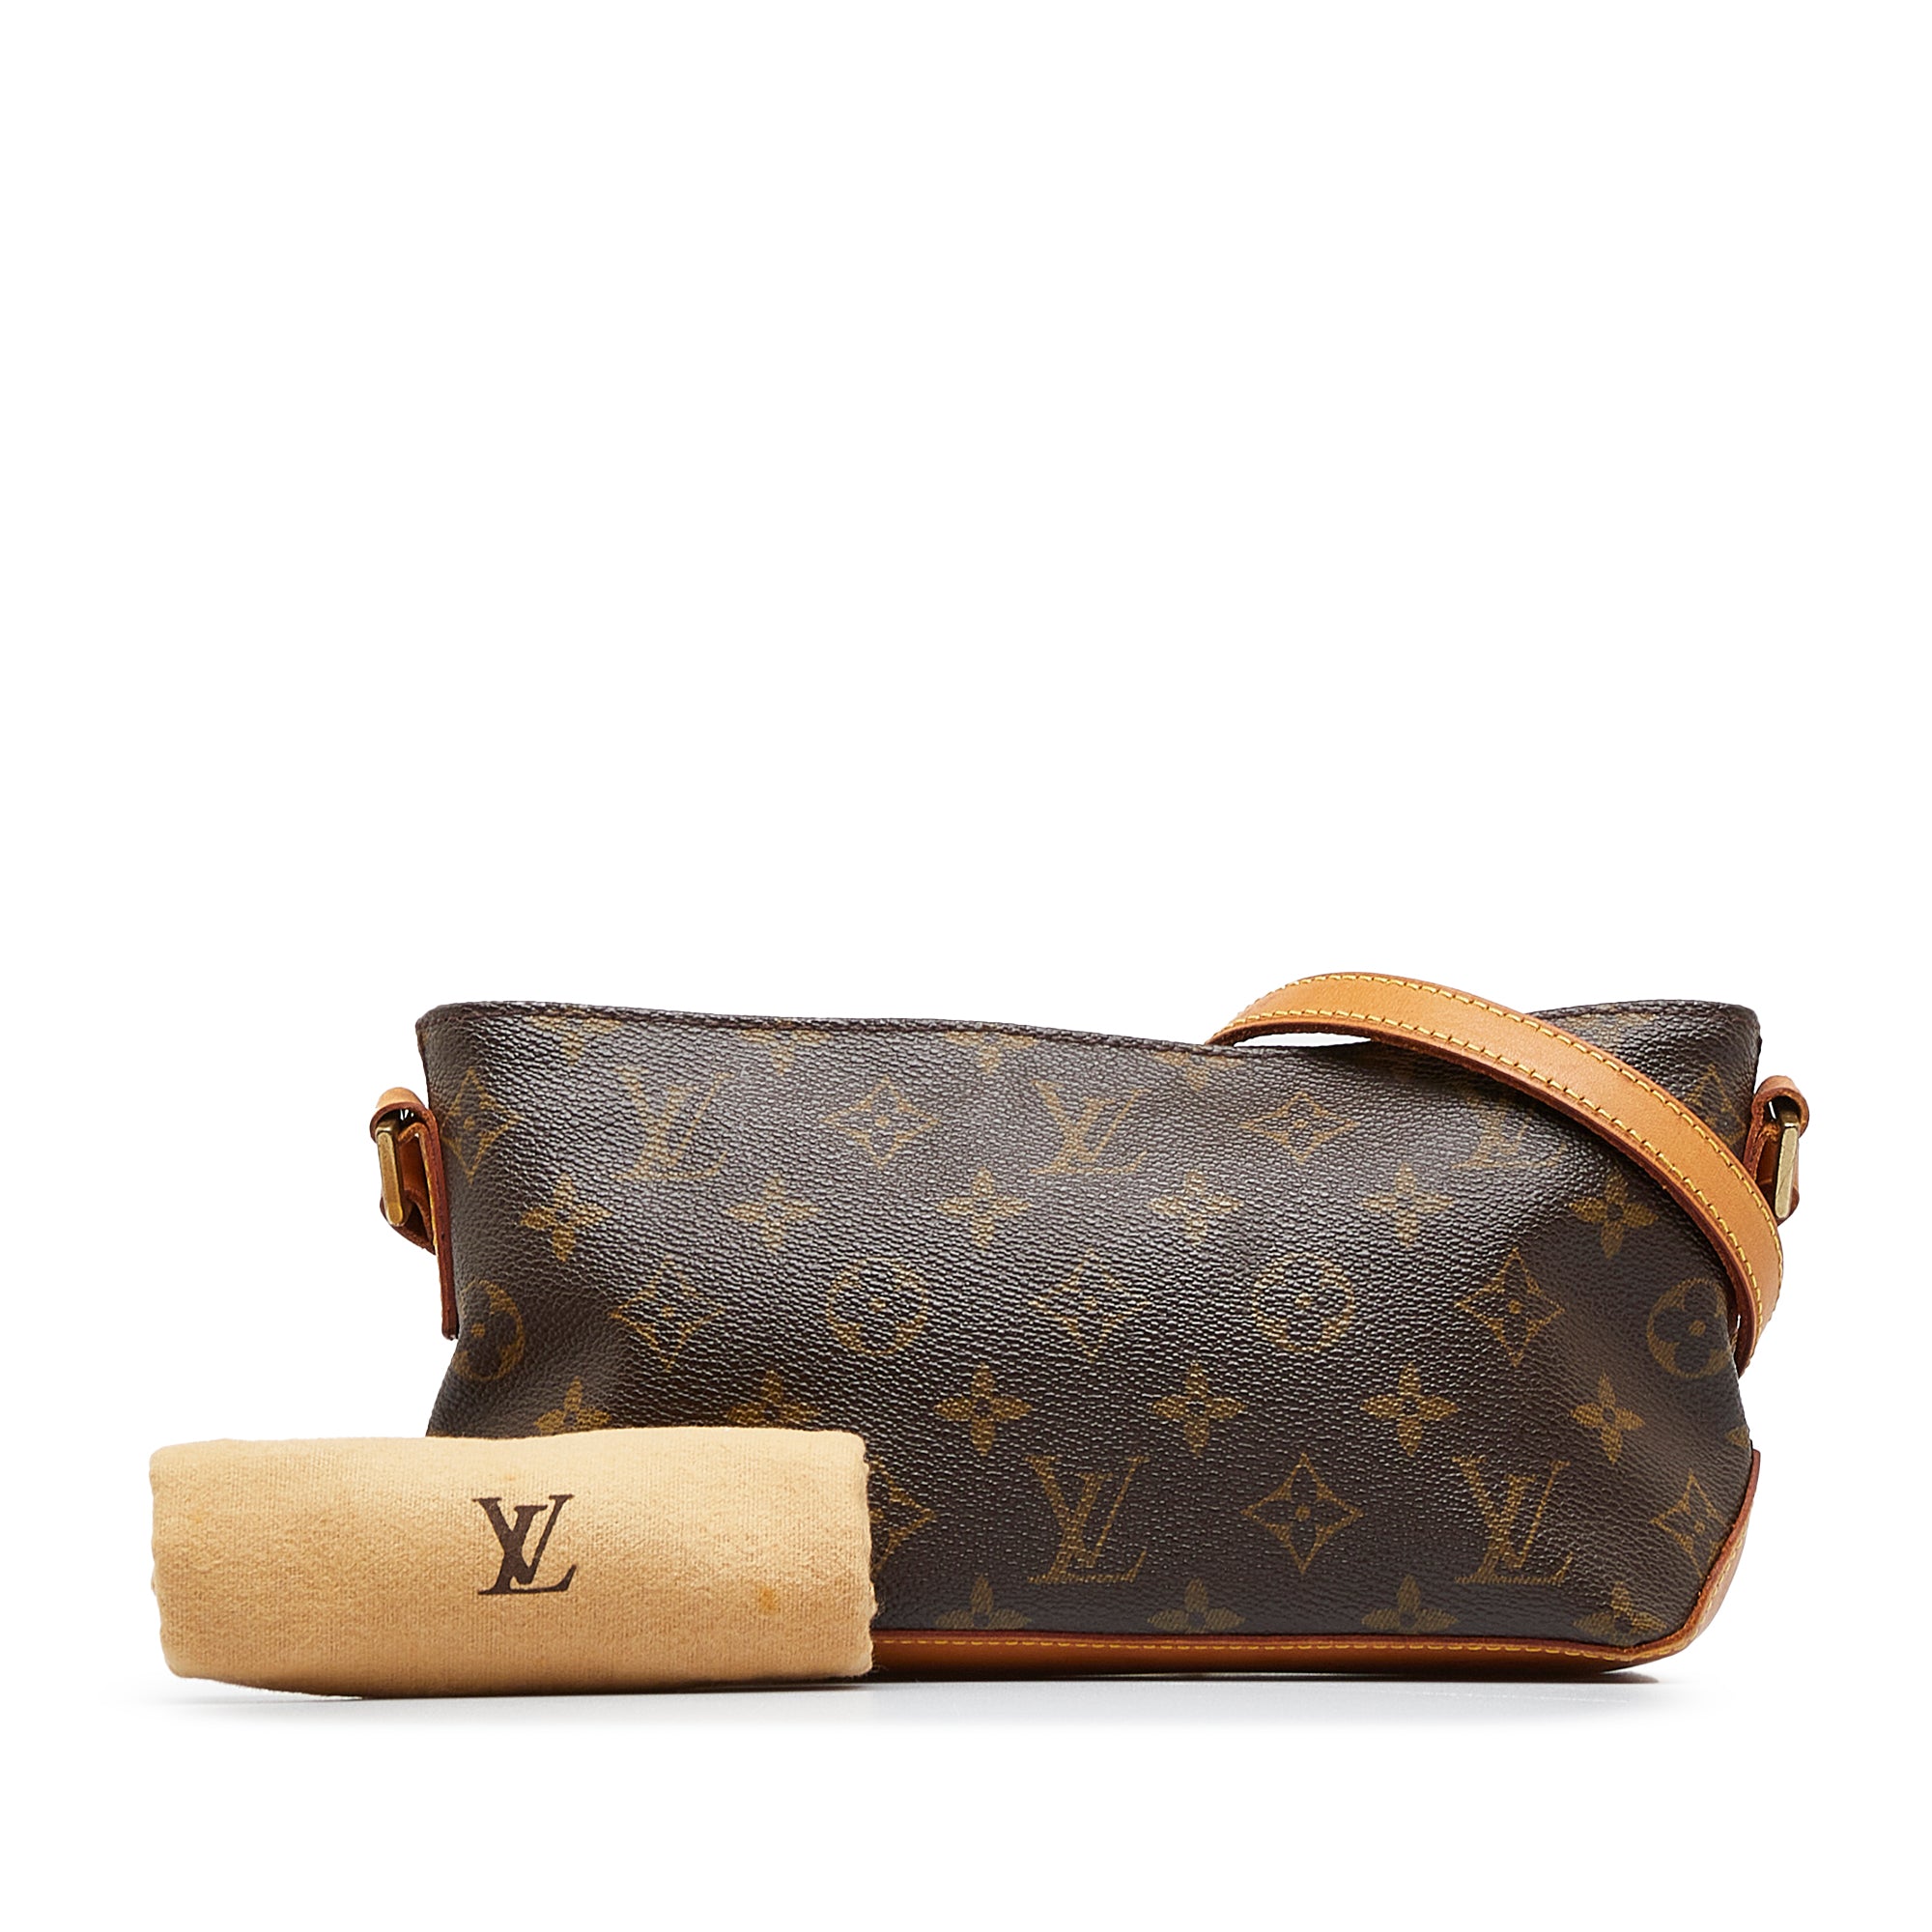 Louis Vuitton Trotteur Monogram Canvas Shoulder Bag on SALE